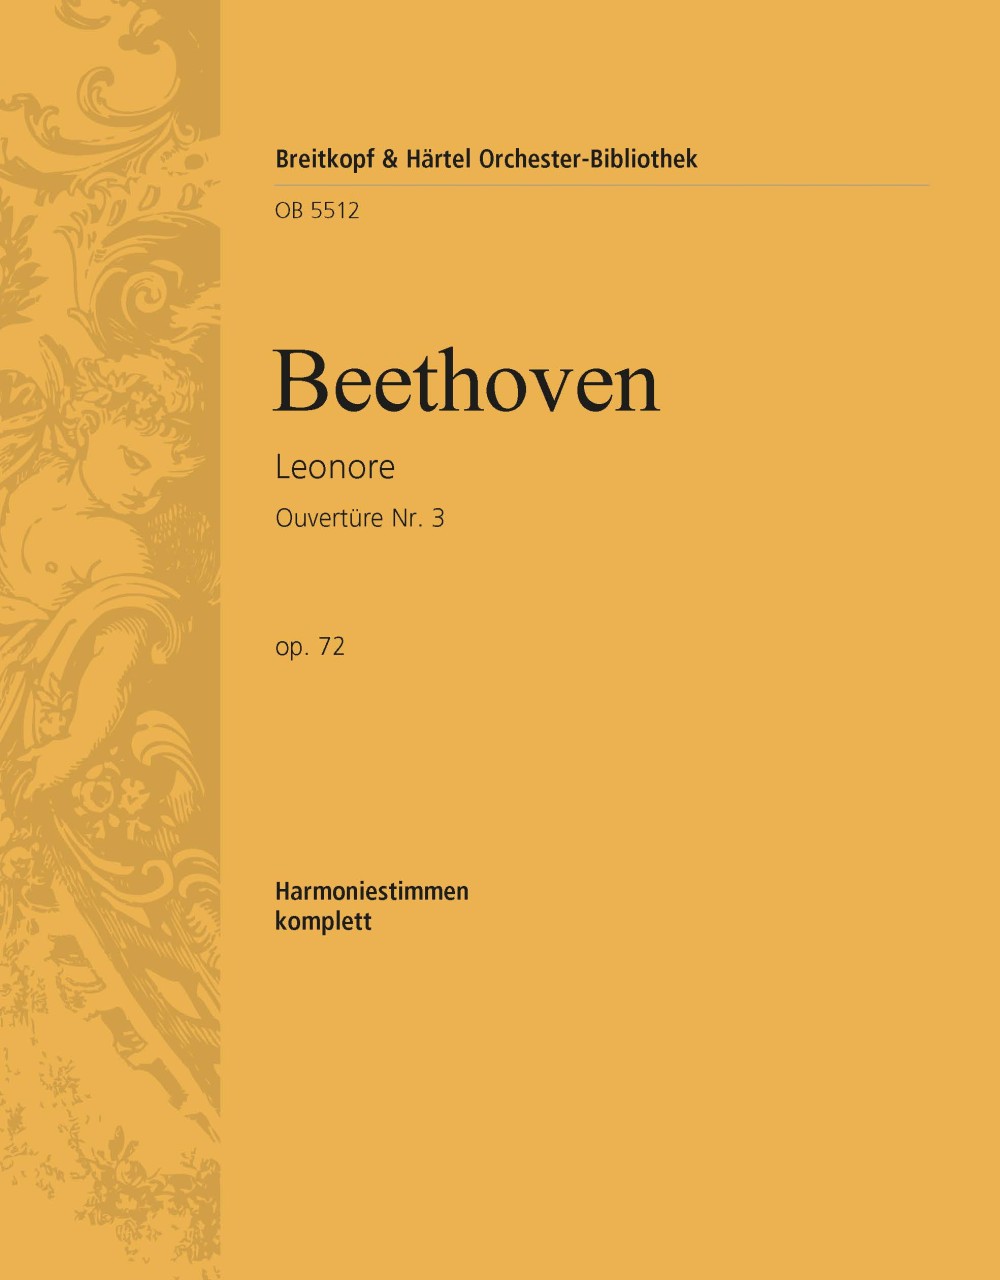 Leonore Op. 72. Ouvertüre Nr. 3